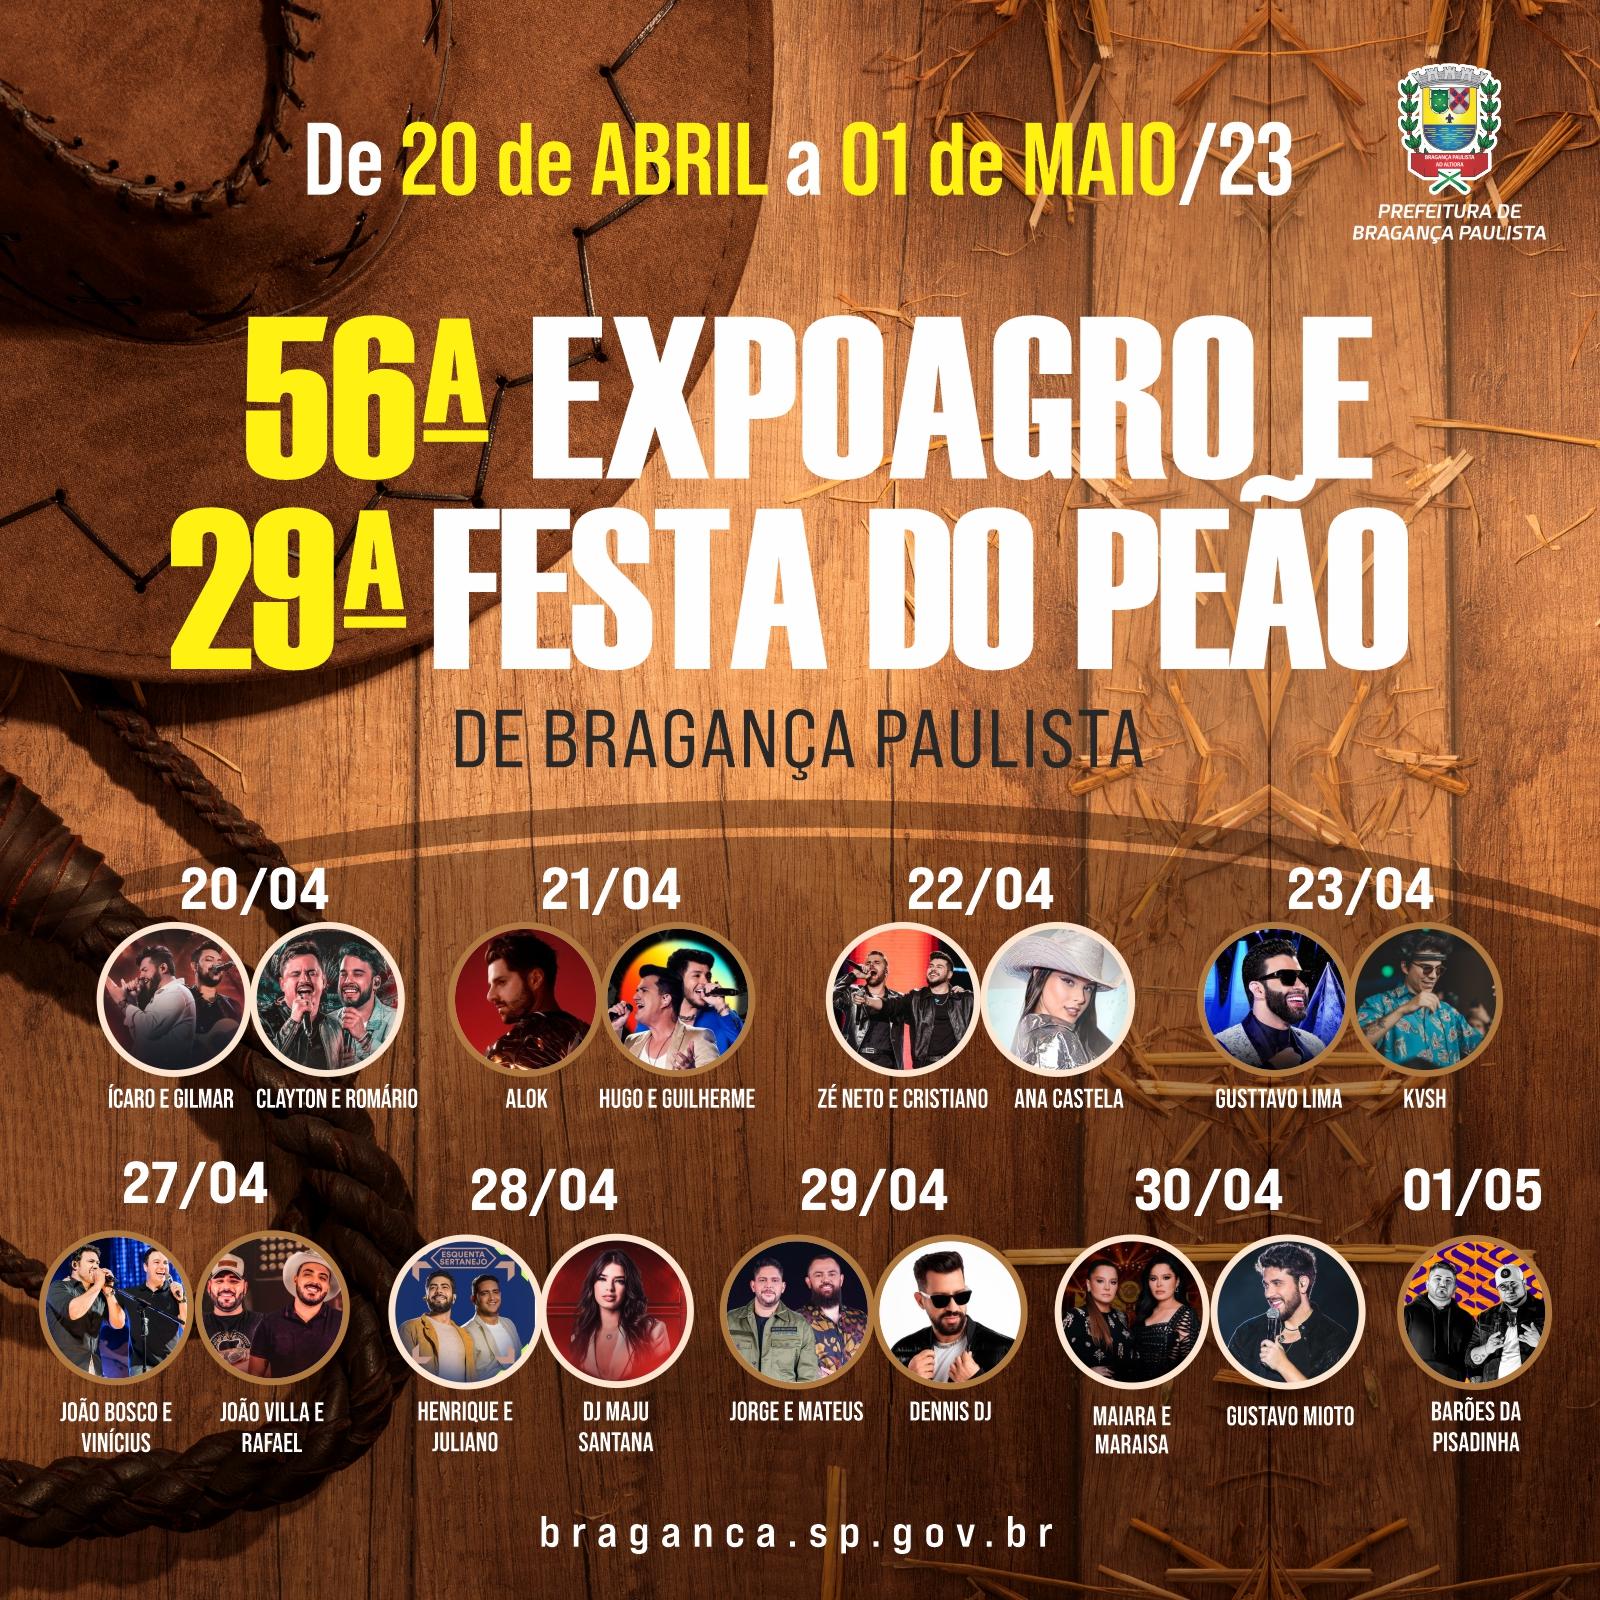 Estão definidos os shows da 56ª Expoagro e 29ª Festa do Peão de Bragança Paulista